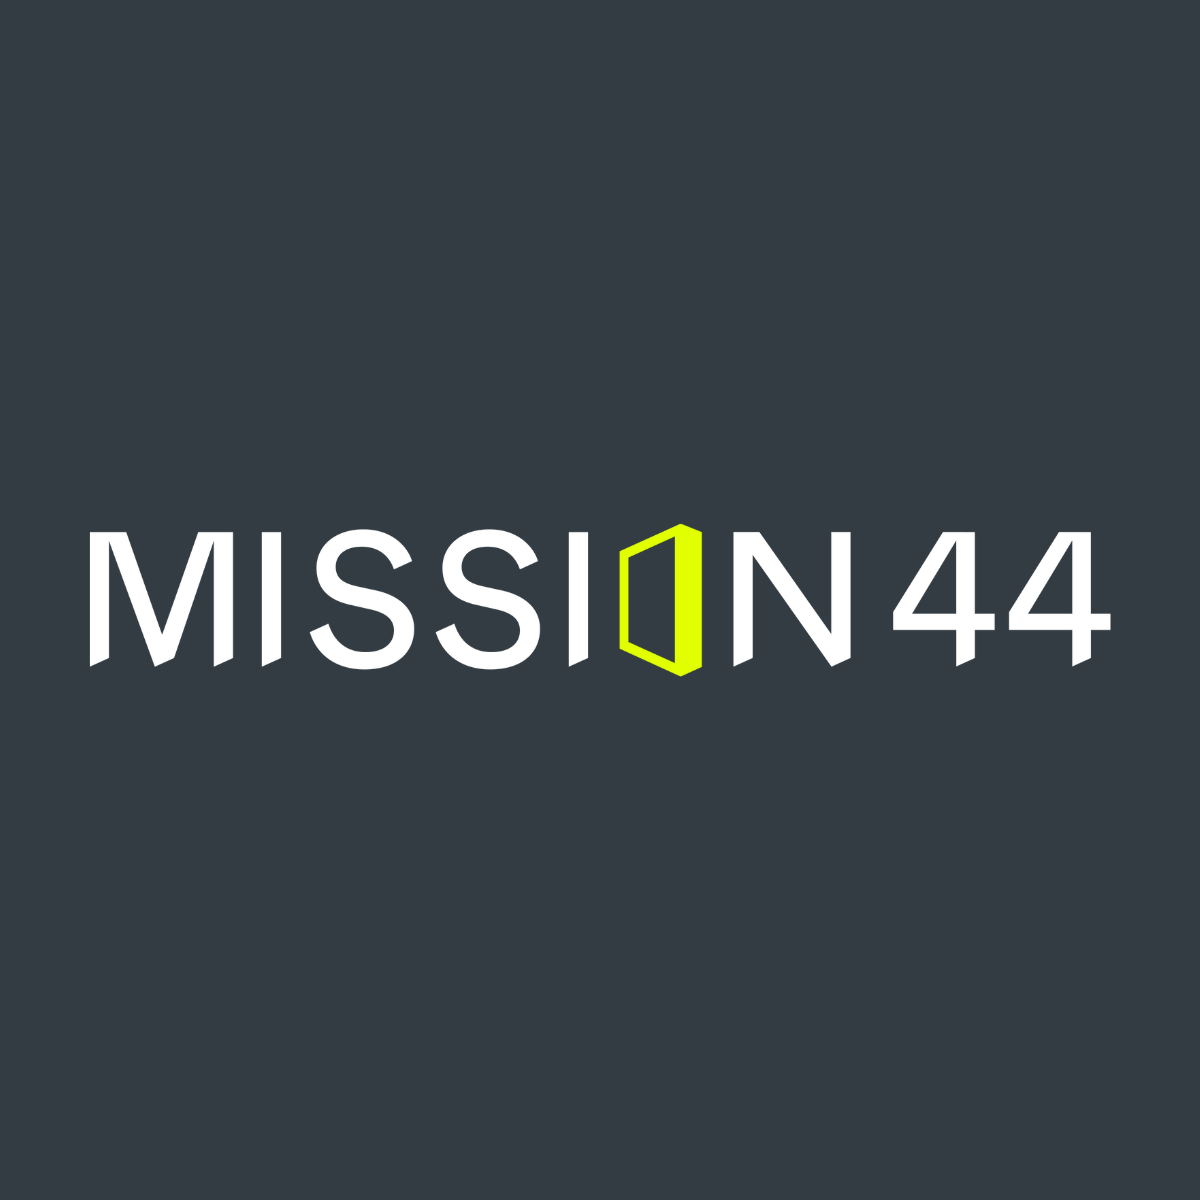 Mission44